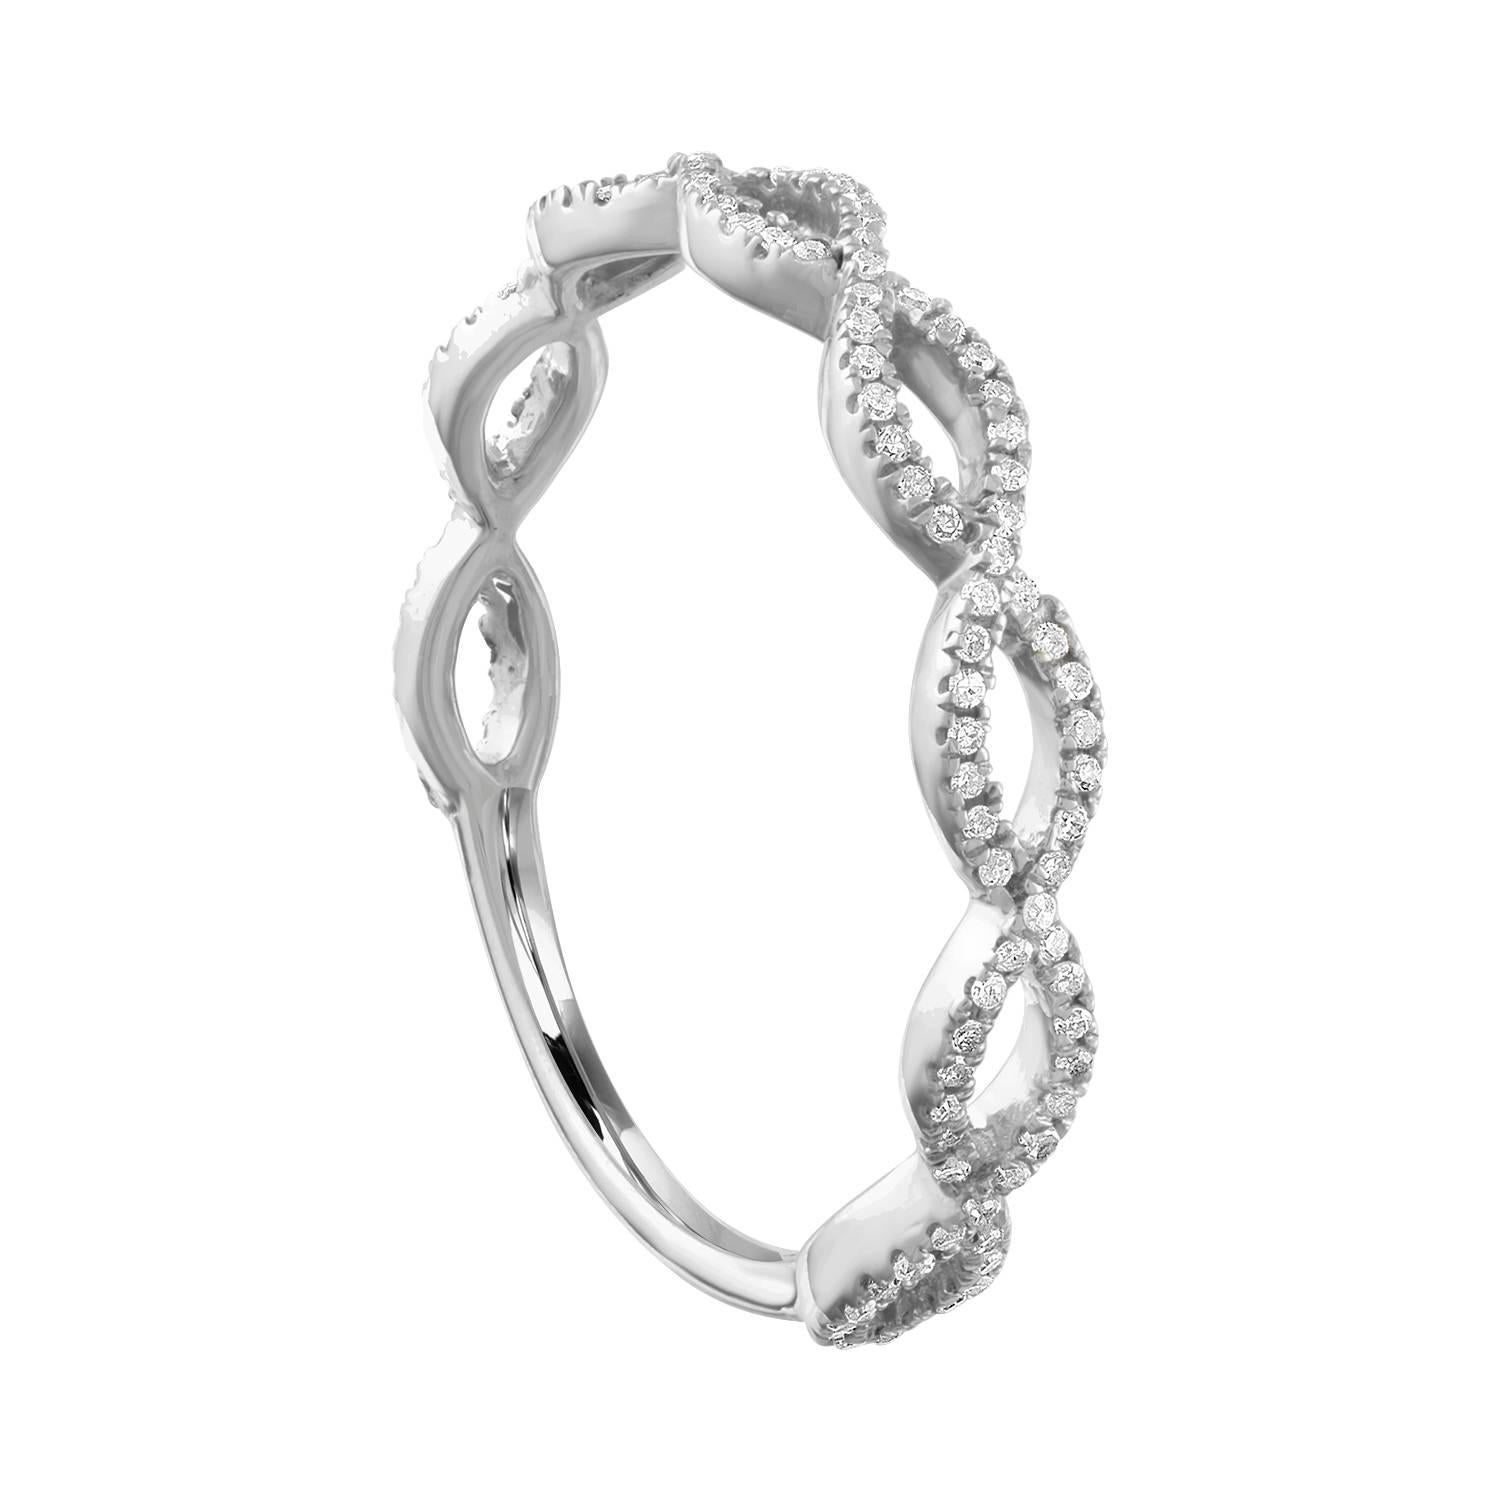 Schöne Infinity Design Band Ring.
Der Ring ist aus 14K Weißgold.
Es sind 0,17 Karat in Diamanten H I1.
Der Ring ist eine Größe 7, sizable.
Der Ring wiegt 1.6 Gramm.